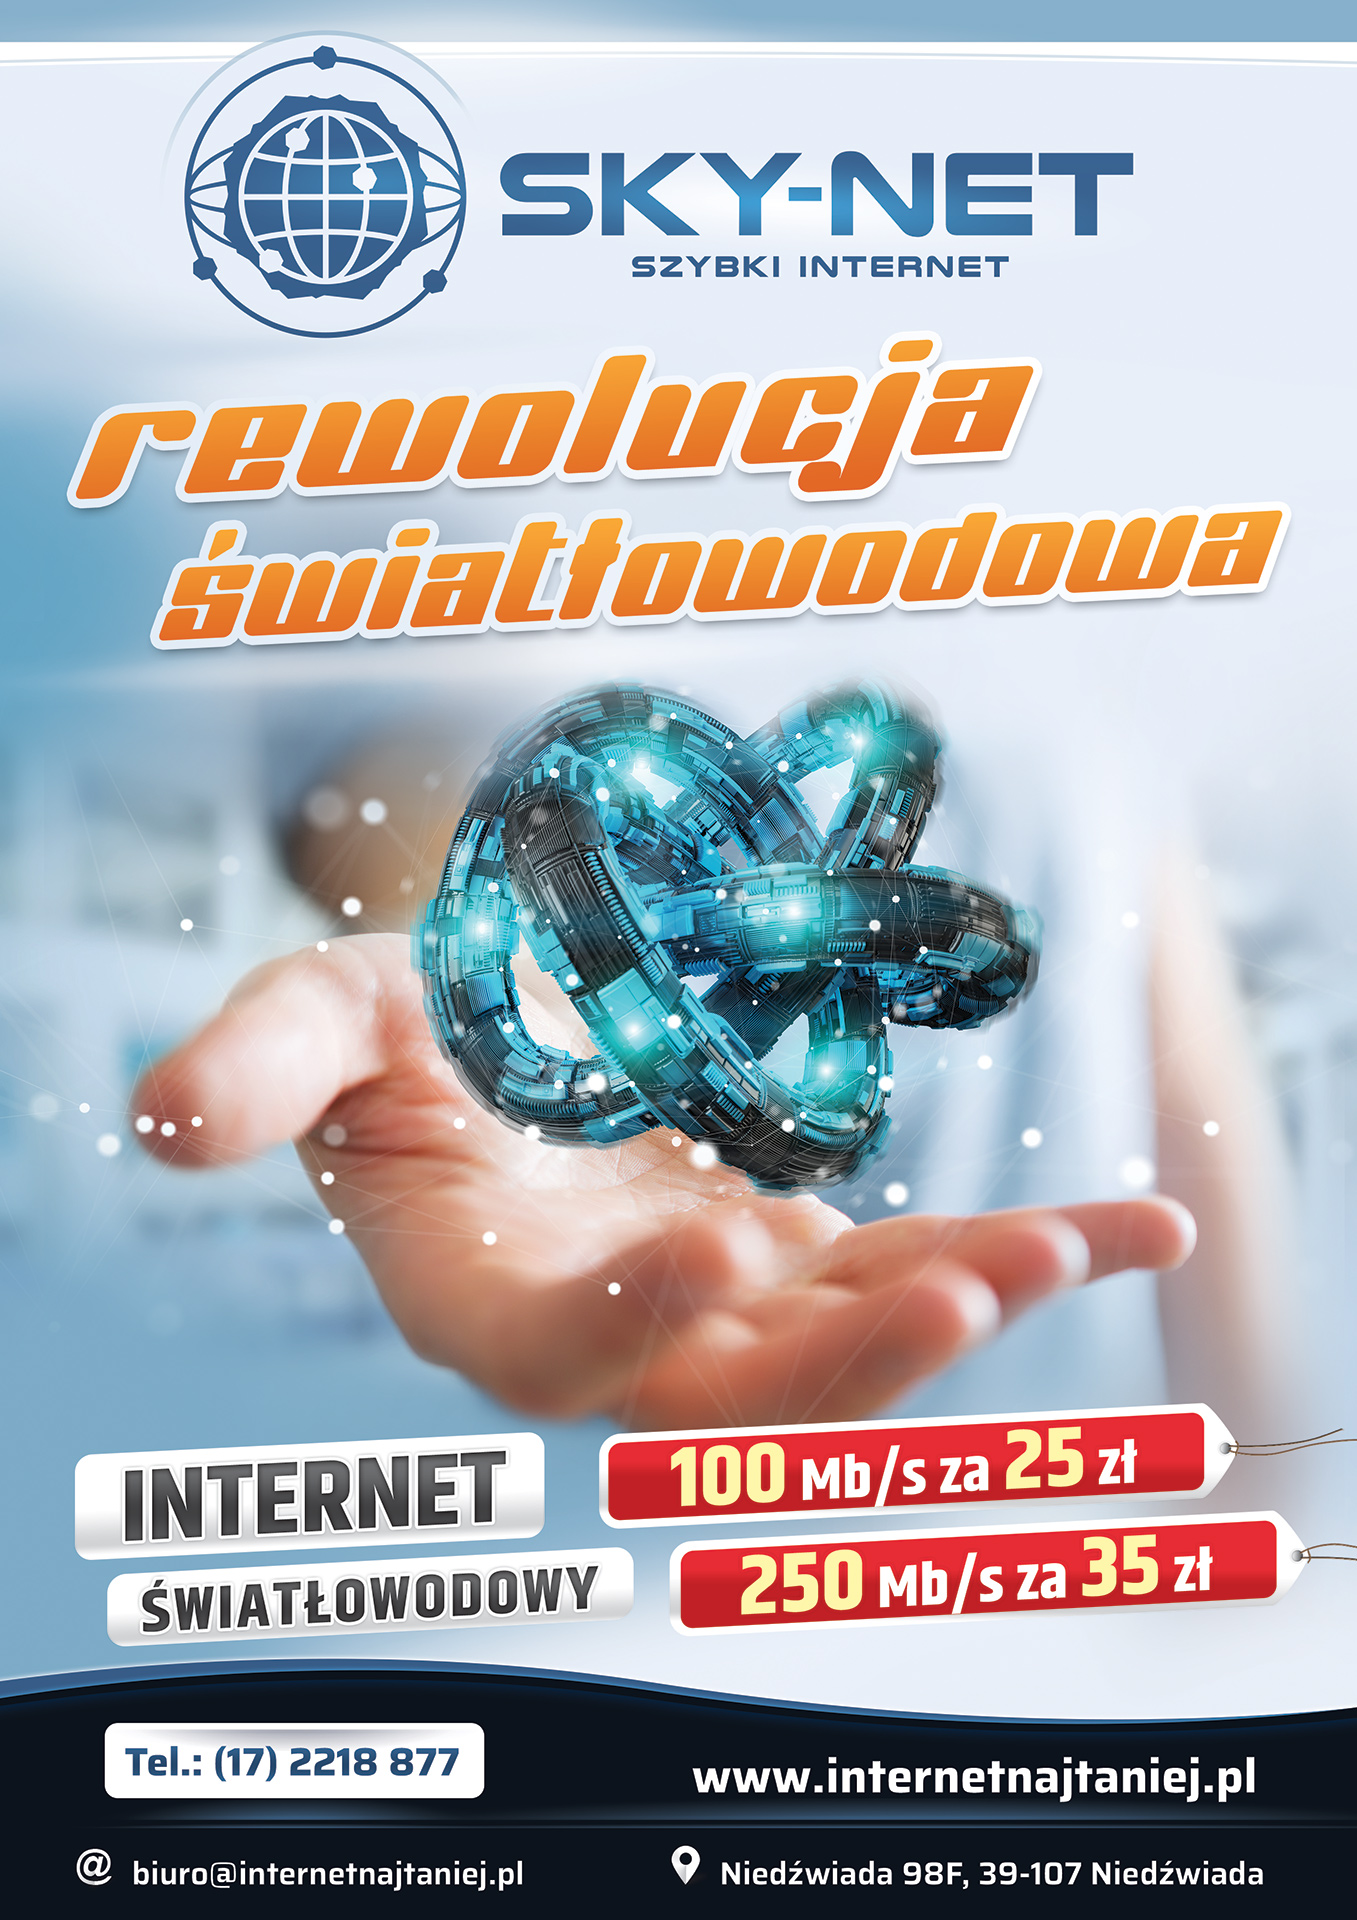 SKY-NET Internet Najtaniej. Rewolucja Światłowodowa